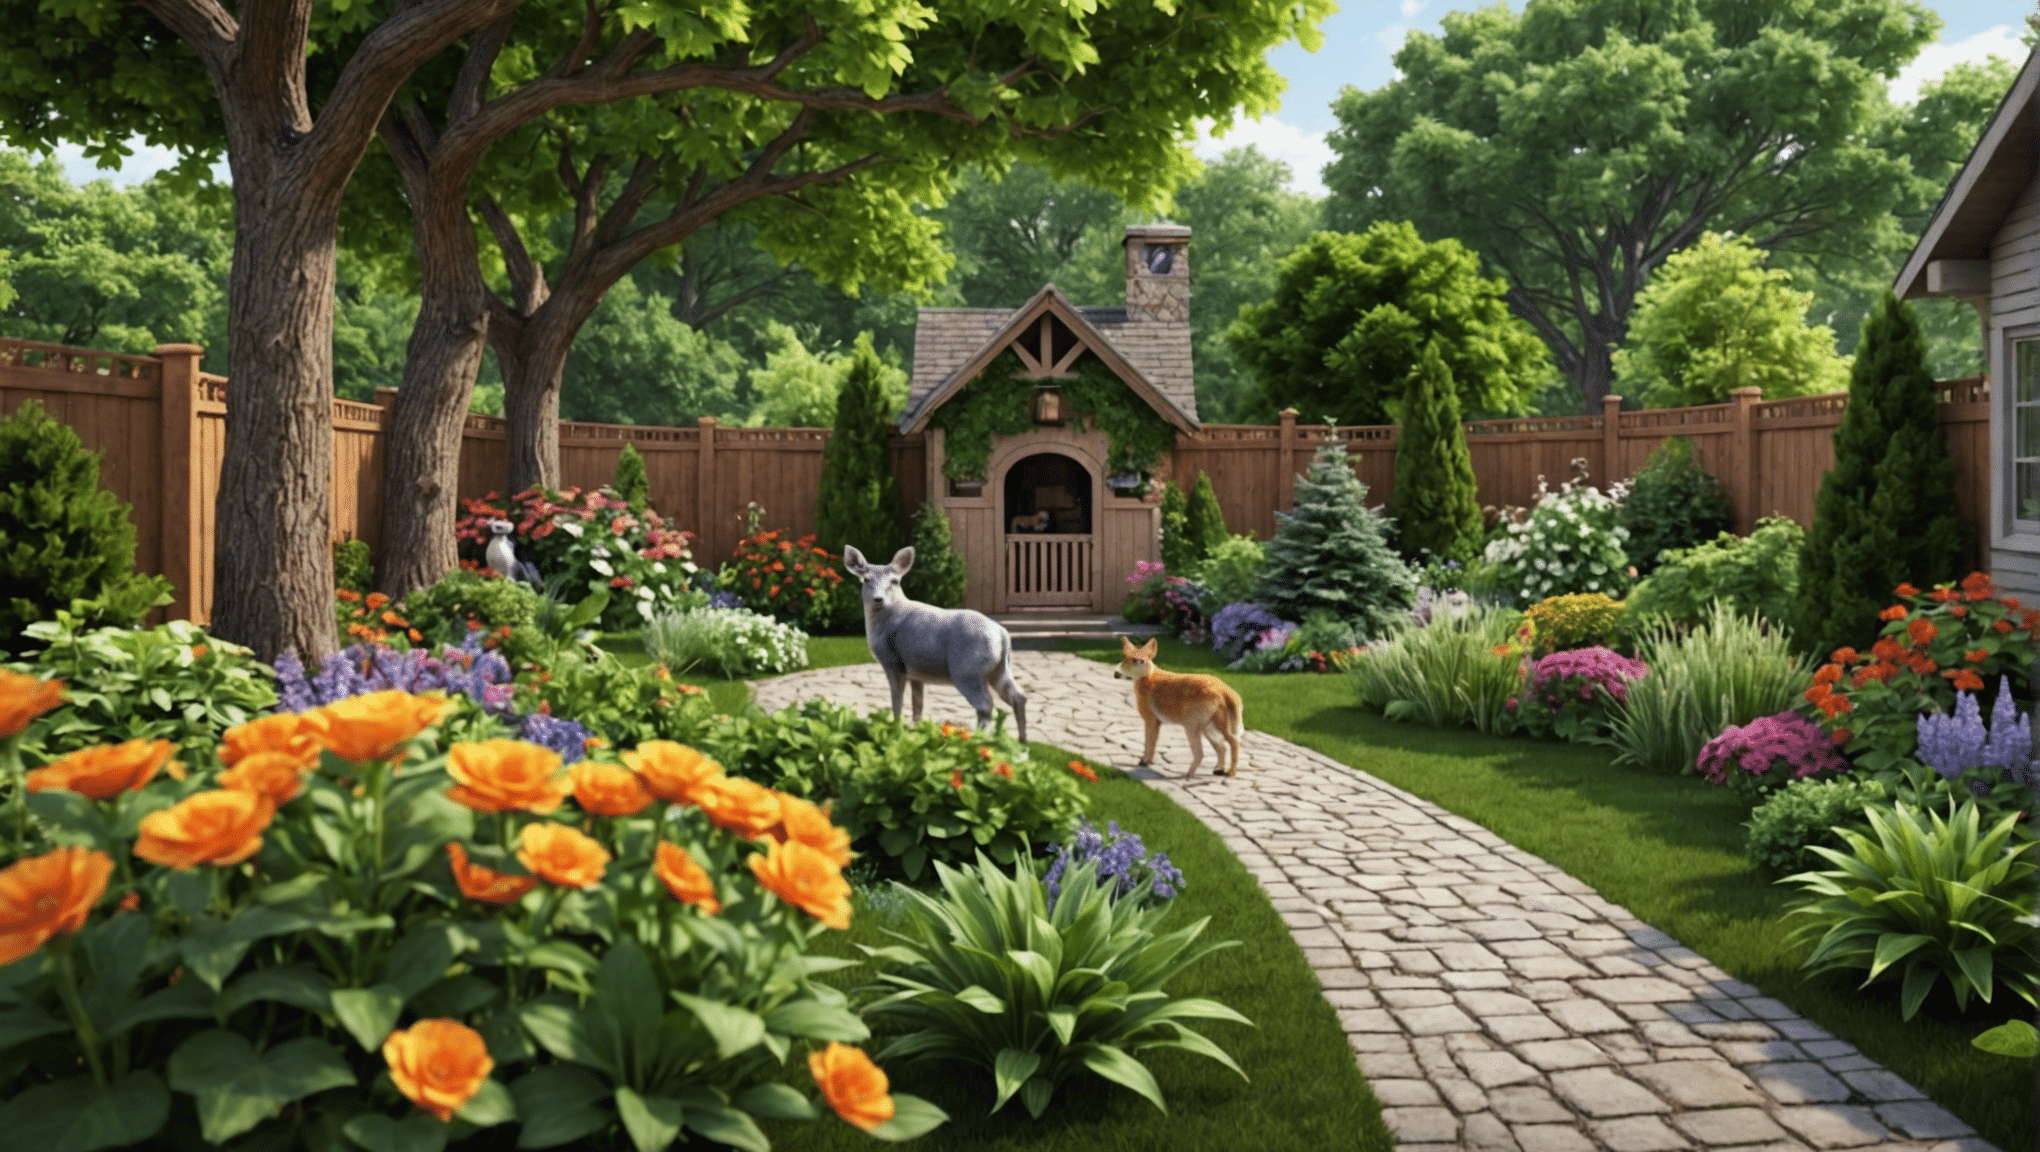 découvrez les avantages d'élever des animaux dans votre jardin et enrichissez votre style de vie avec ce guide complet.